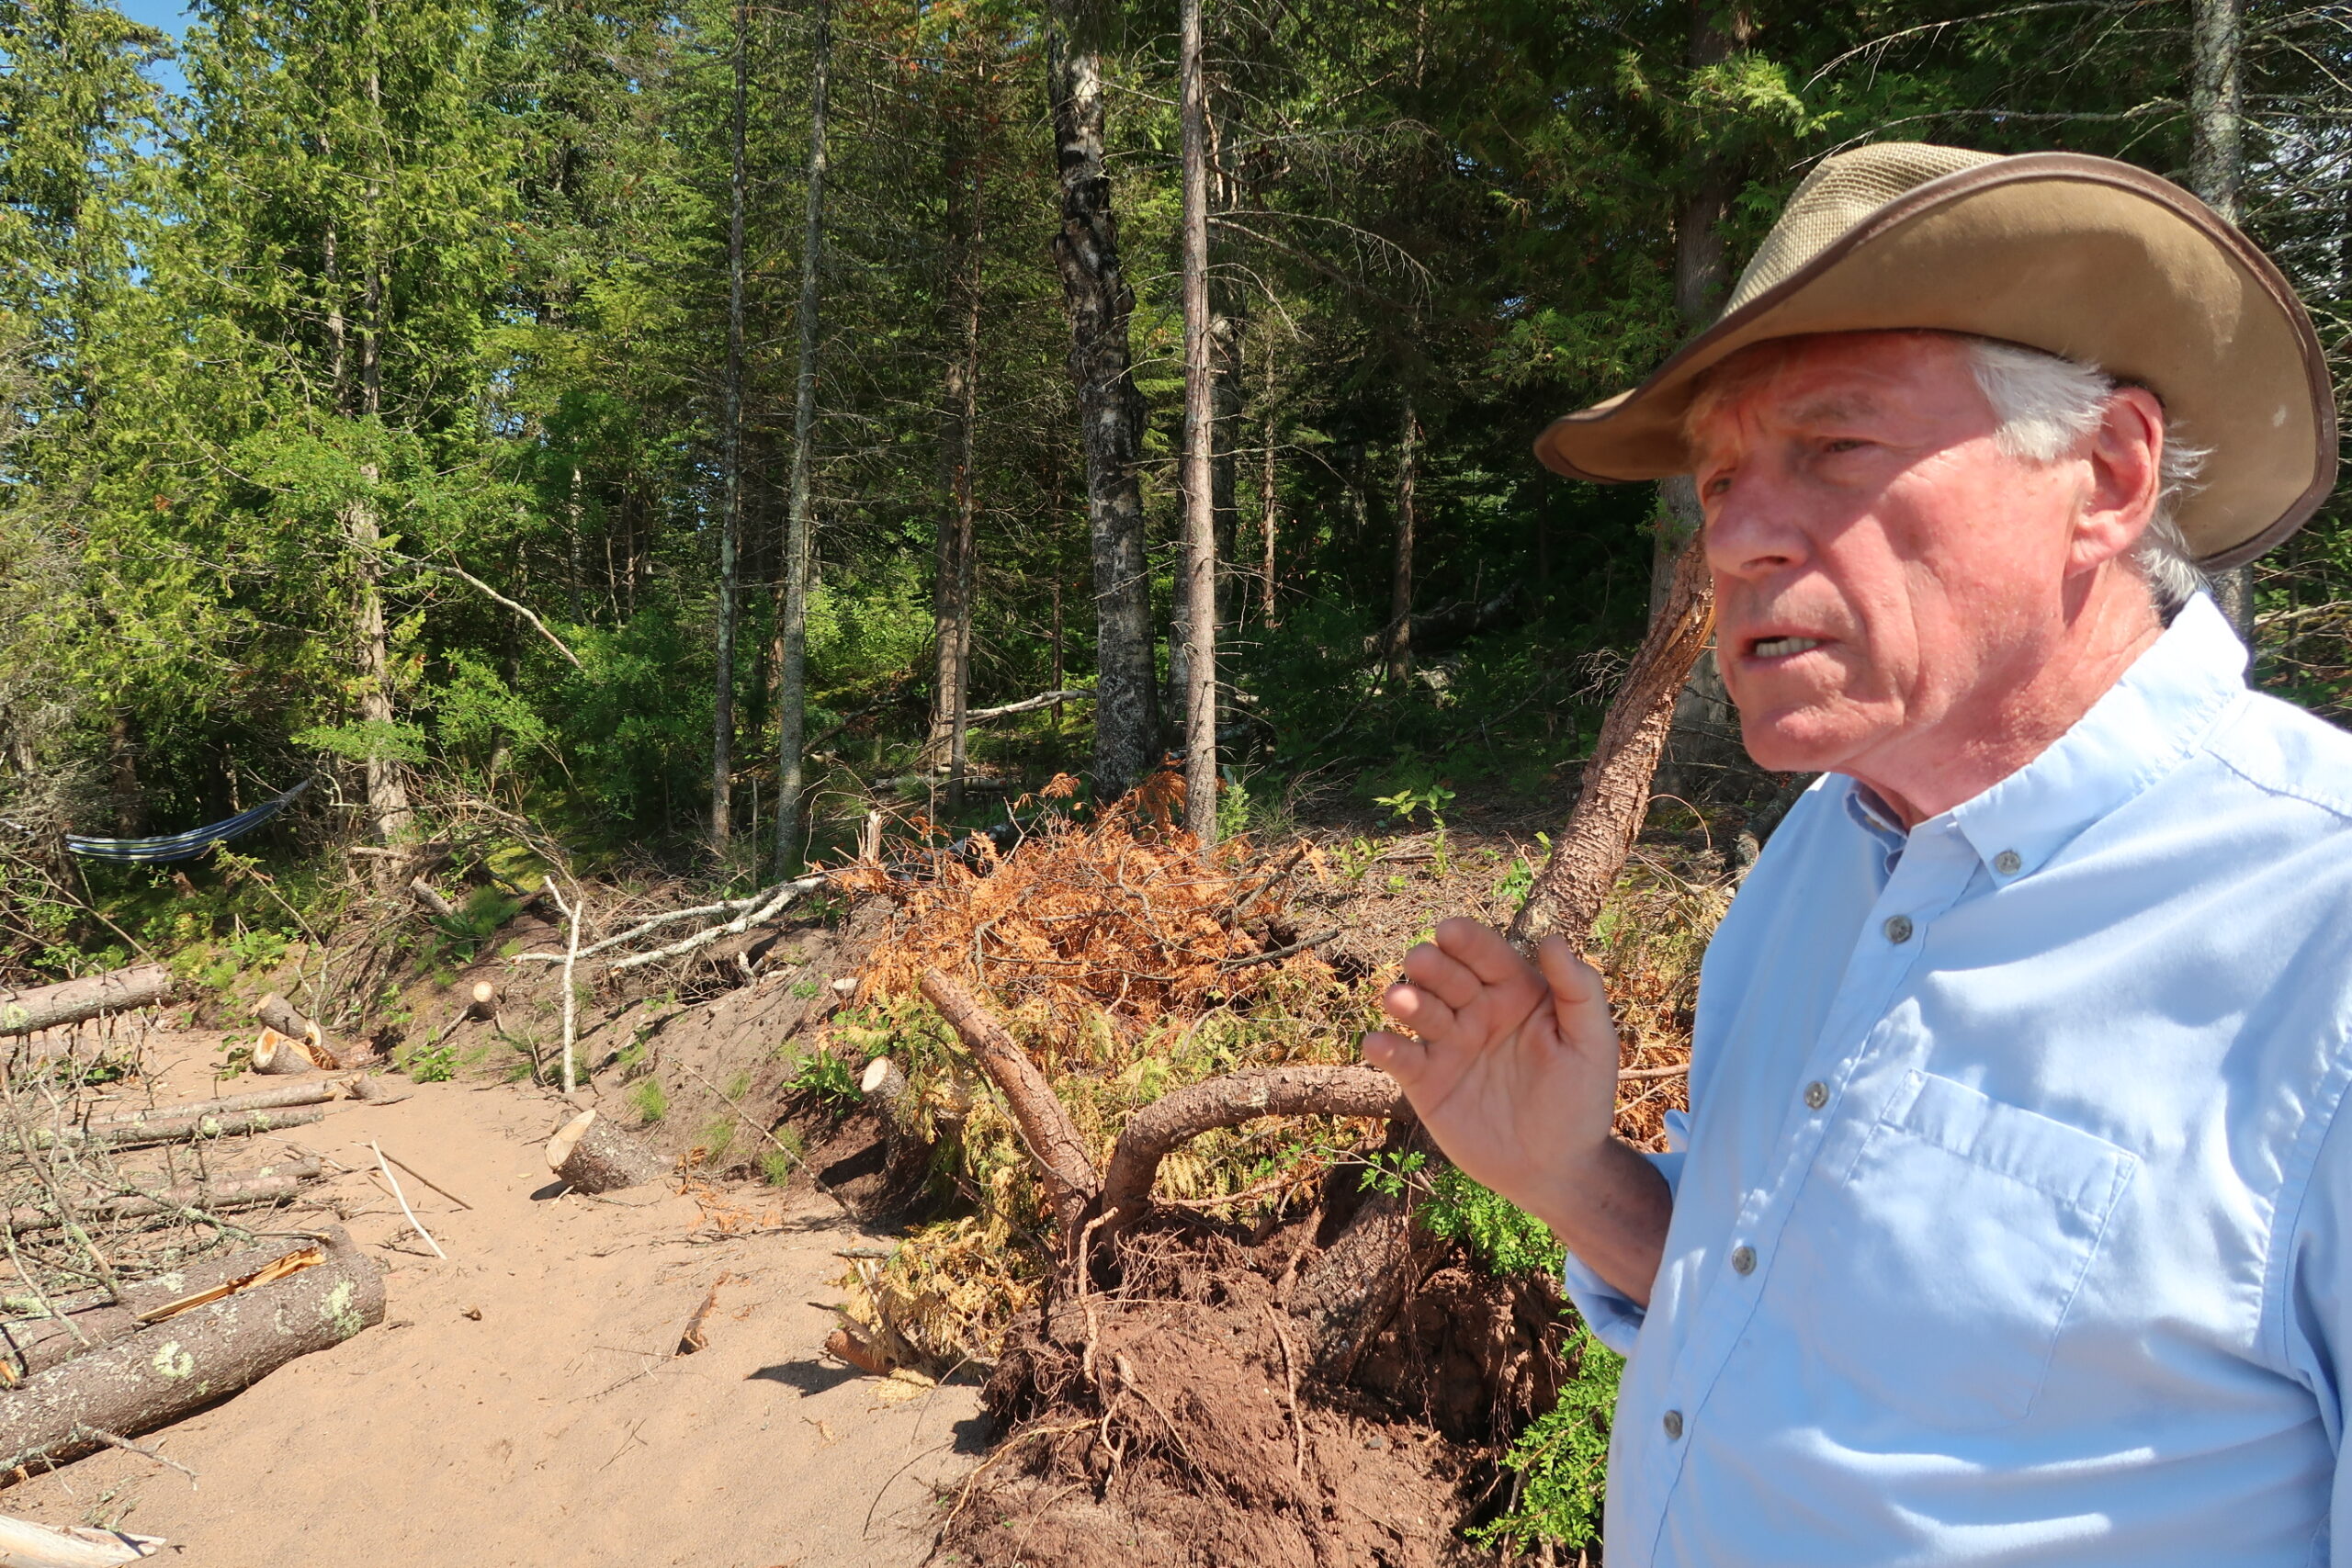 Theron O'Connor details shoreline erosion near his grandfather's cabin.